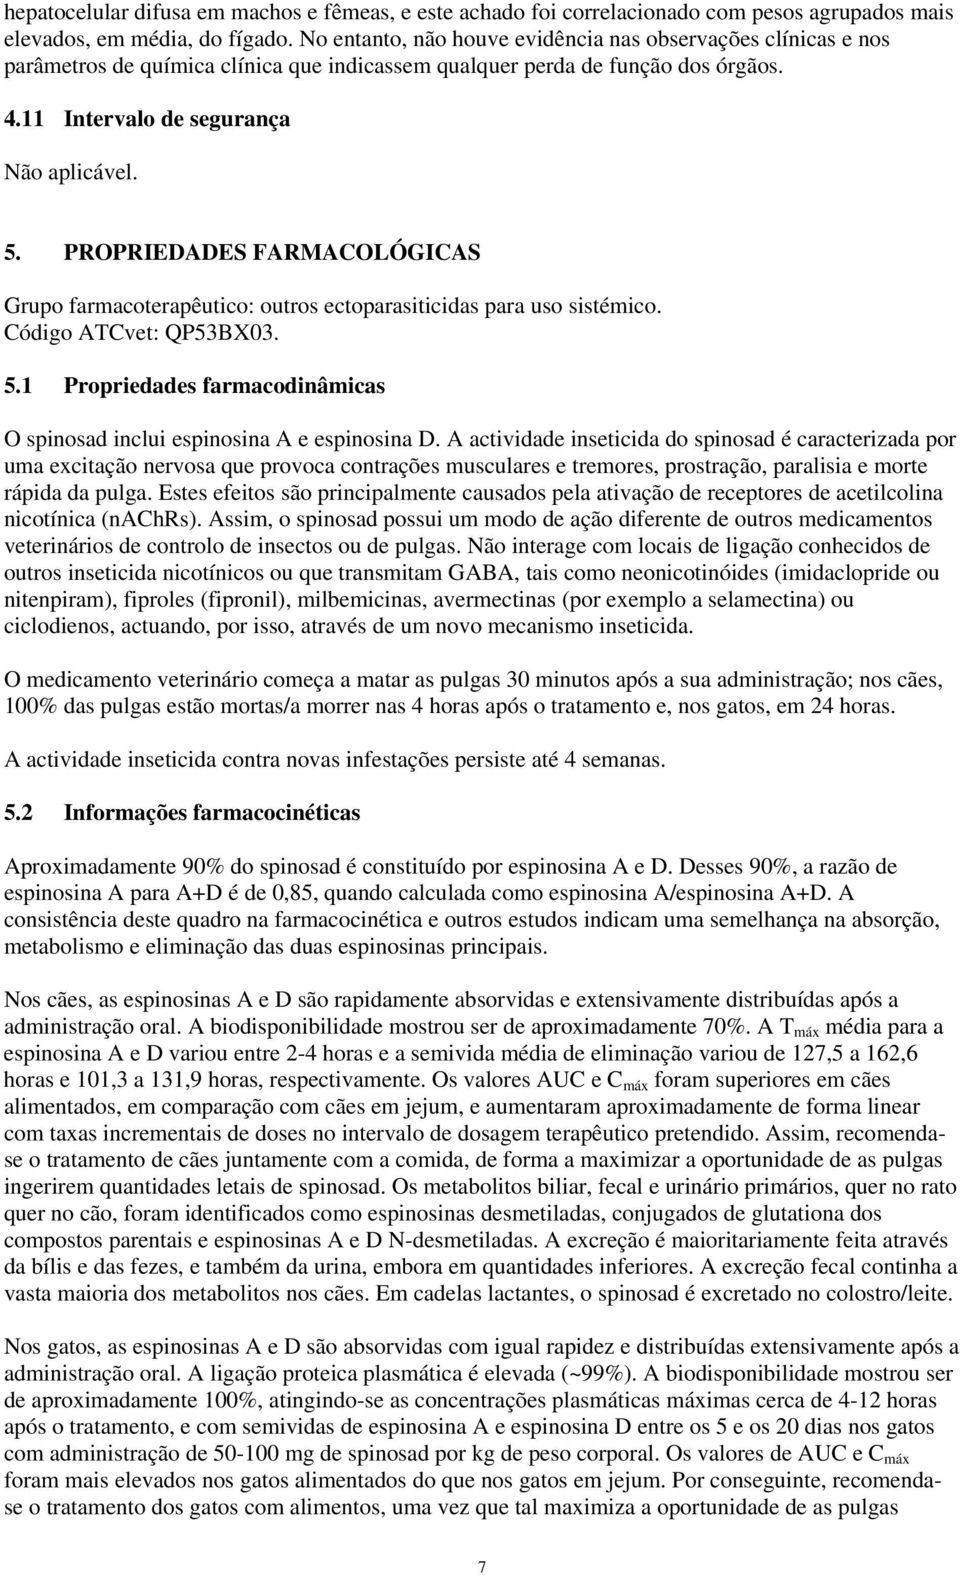 PROPRIEDADES FARMACOLÓGICAS Grupo farmacoterapêutico: outros ectoparasiticidas para uso sistémico. Código ATCvet: QP53BX03. 5.